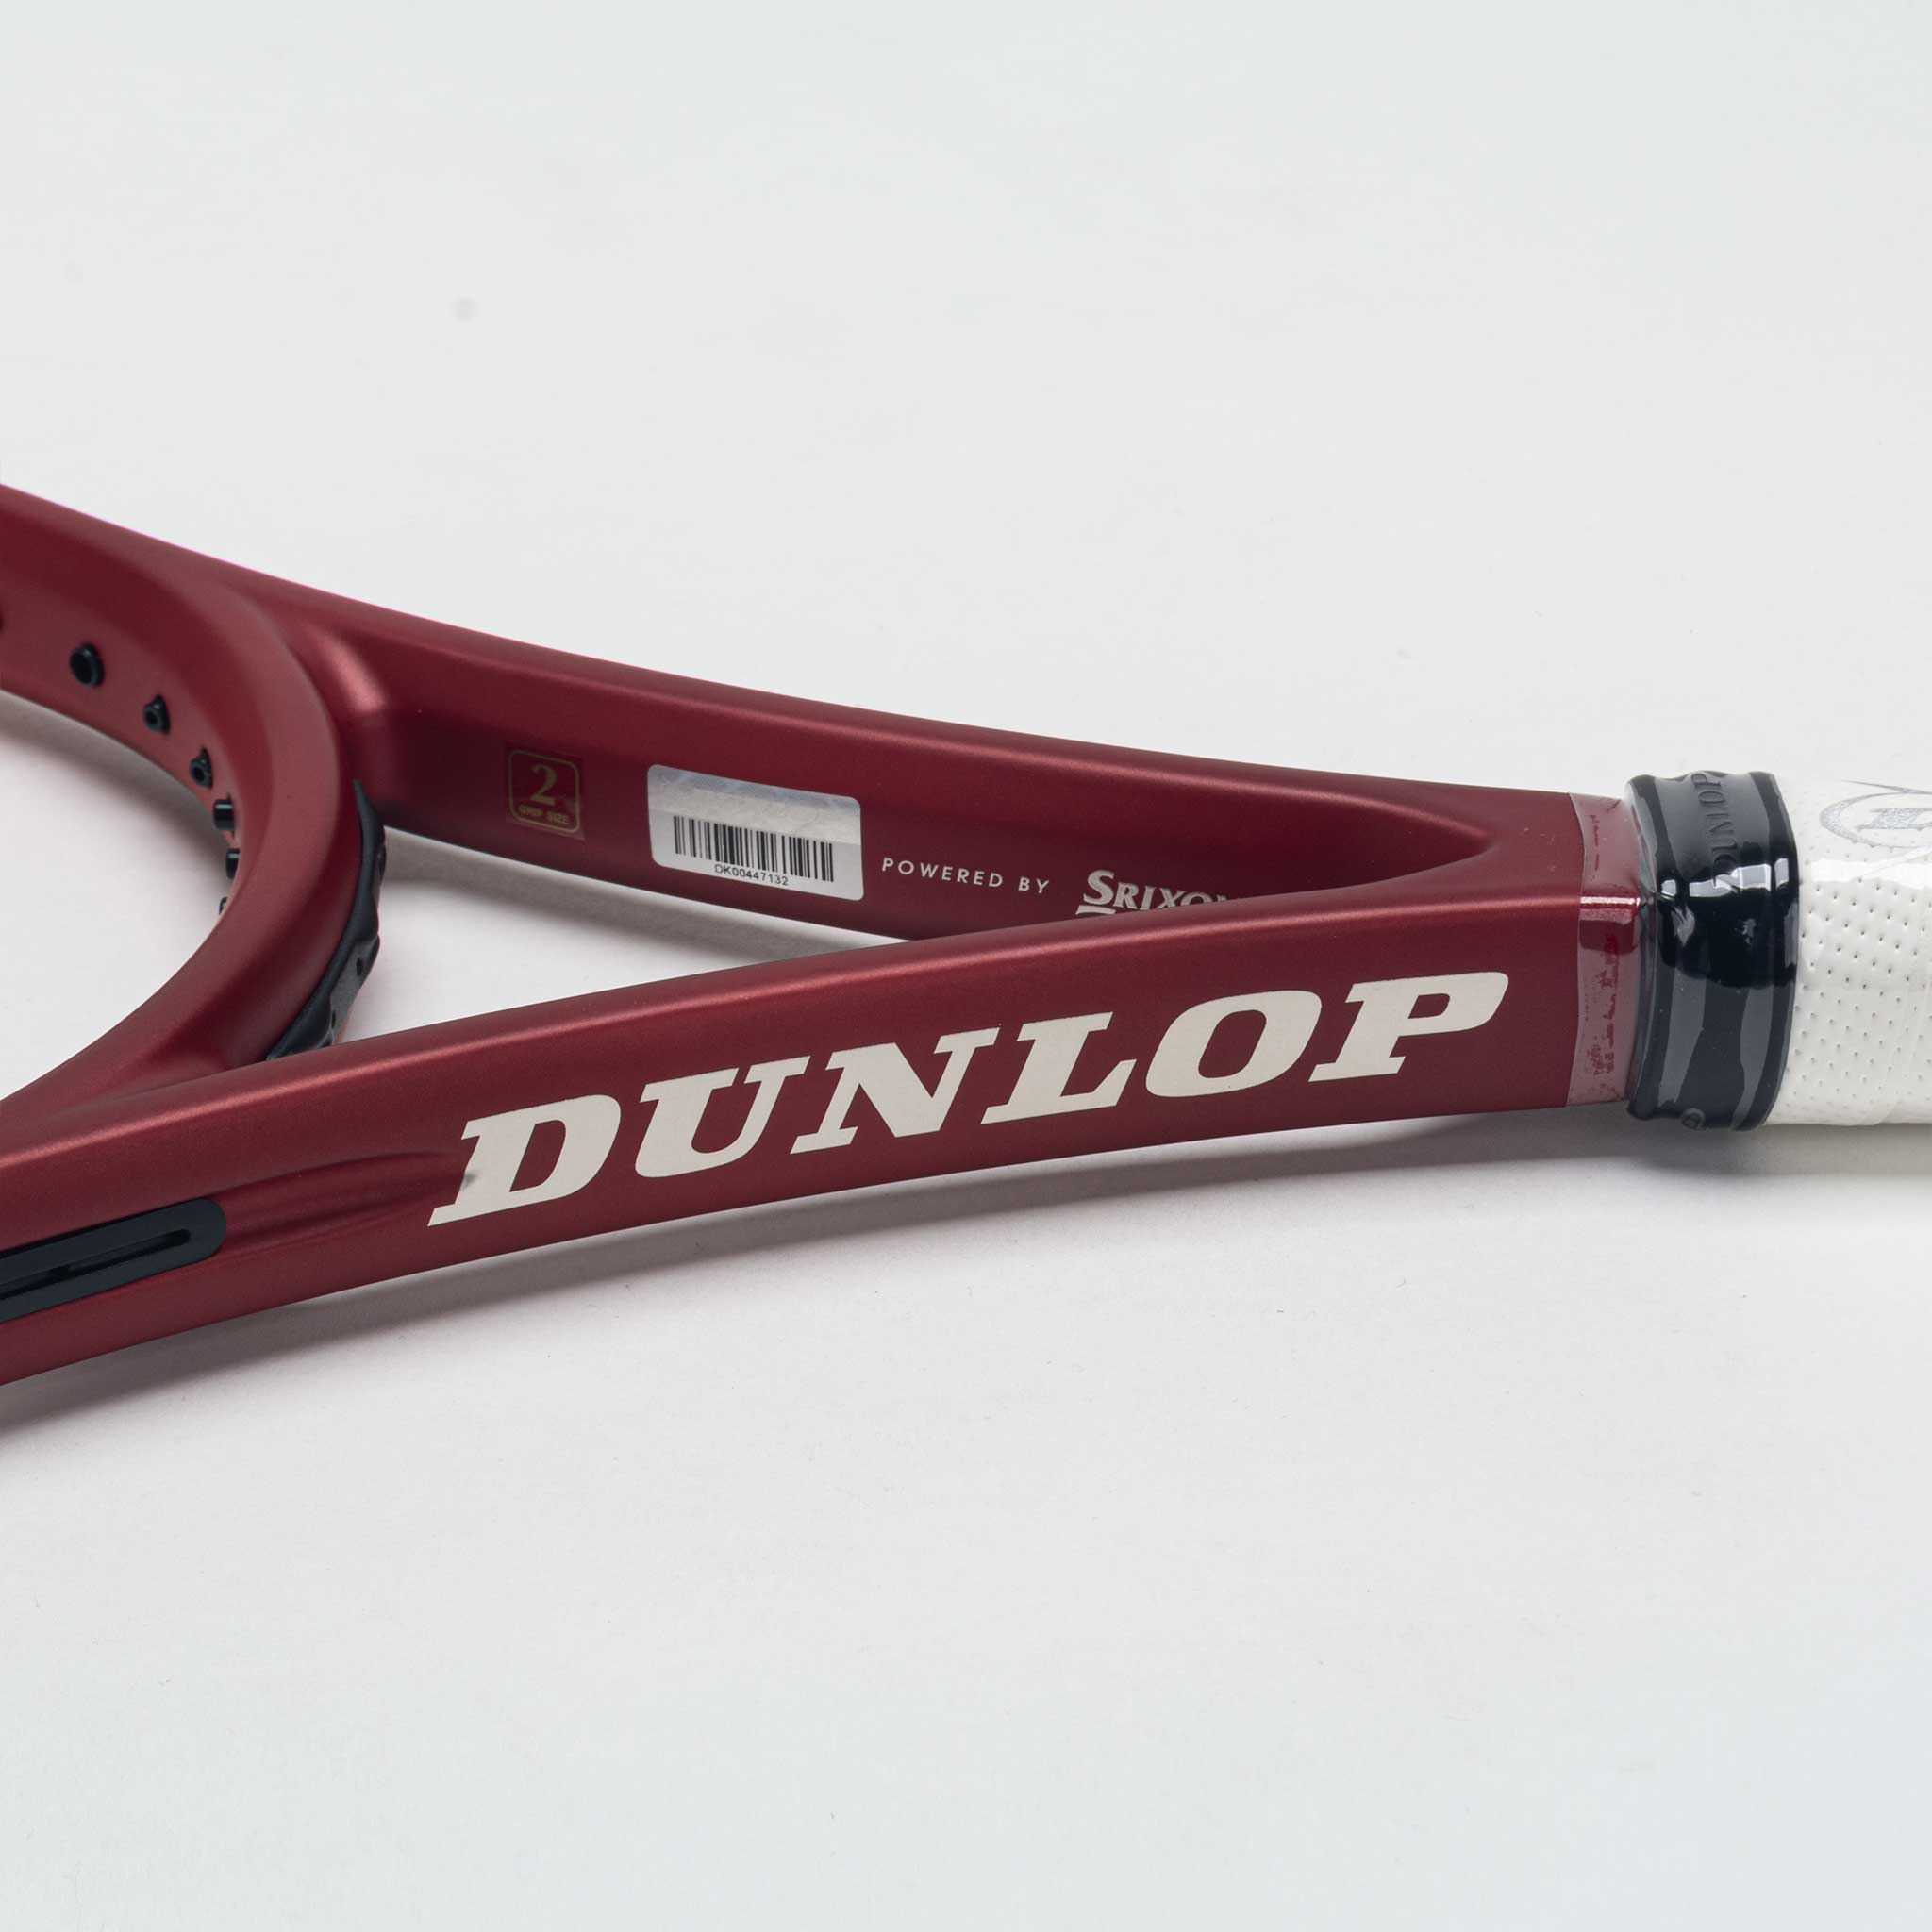 Dunlop CX 400